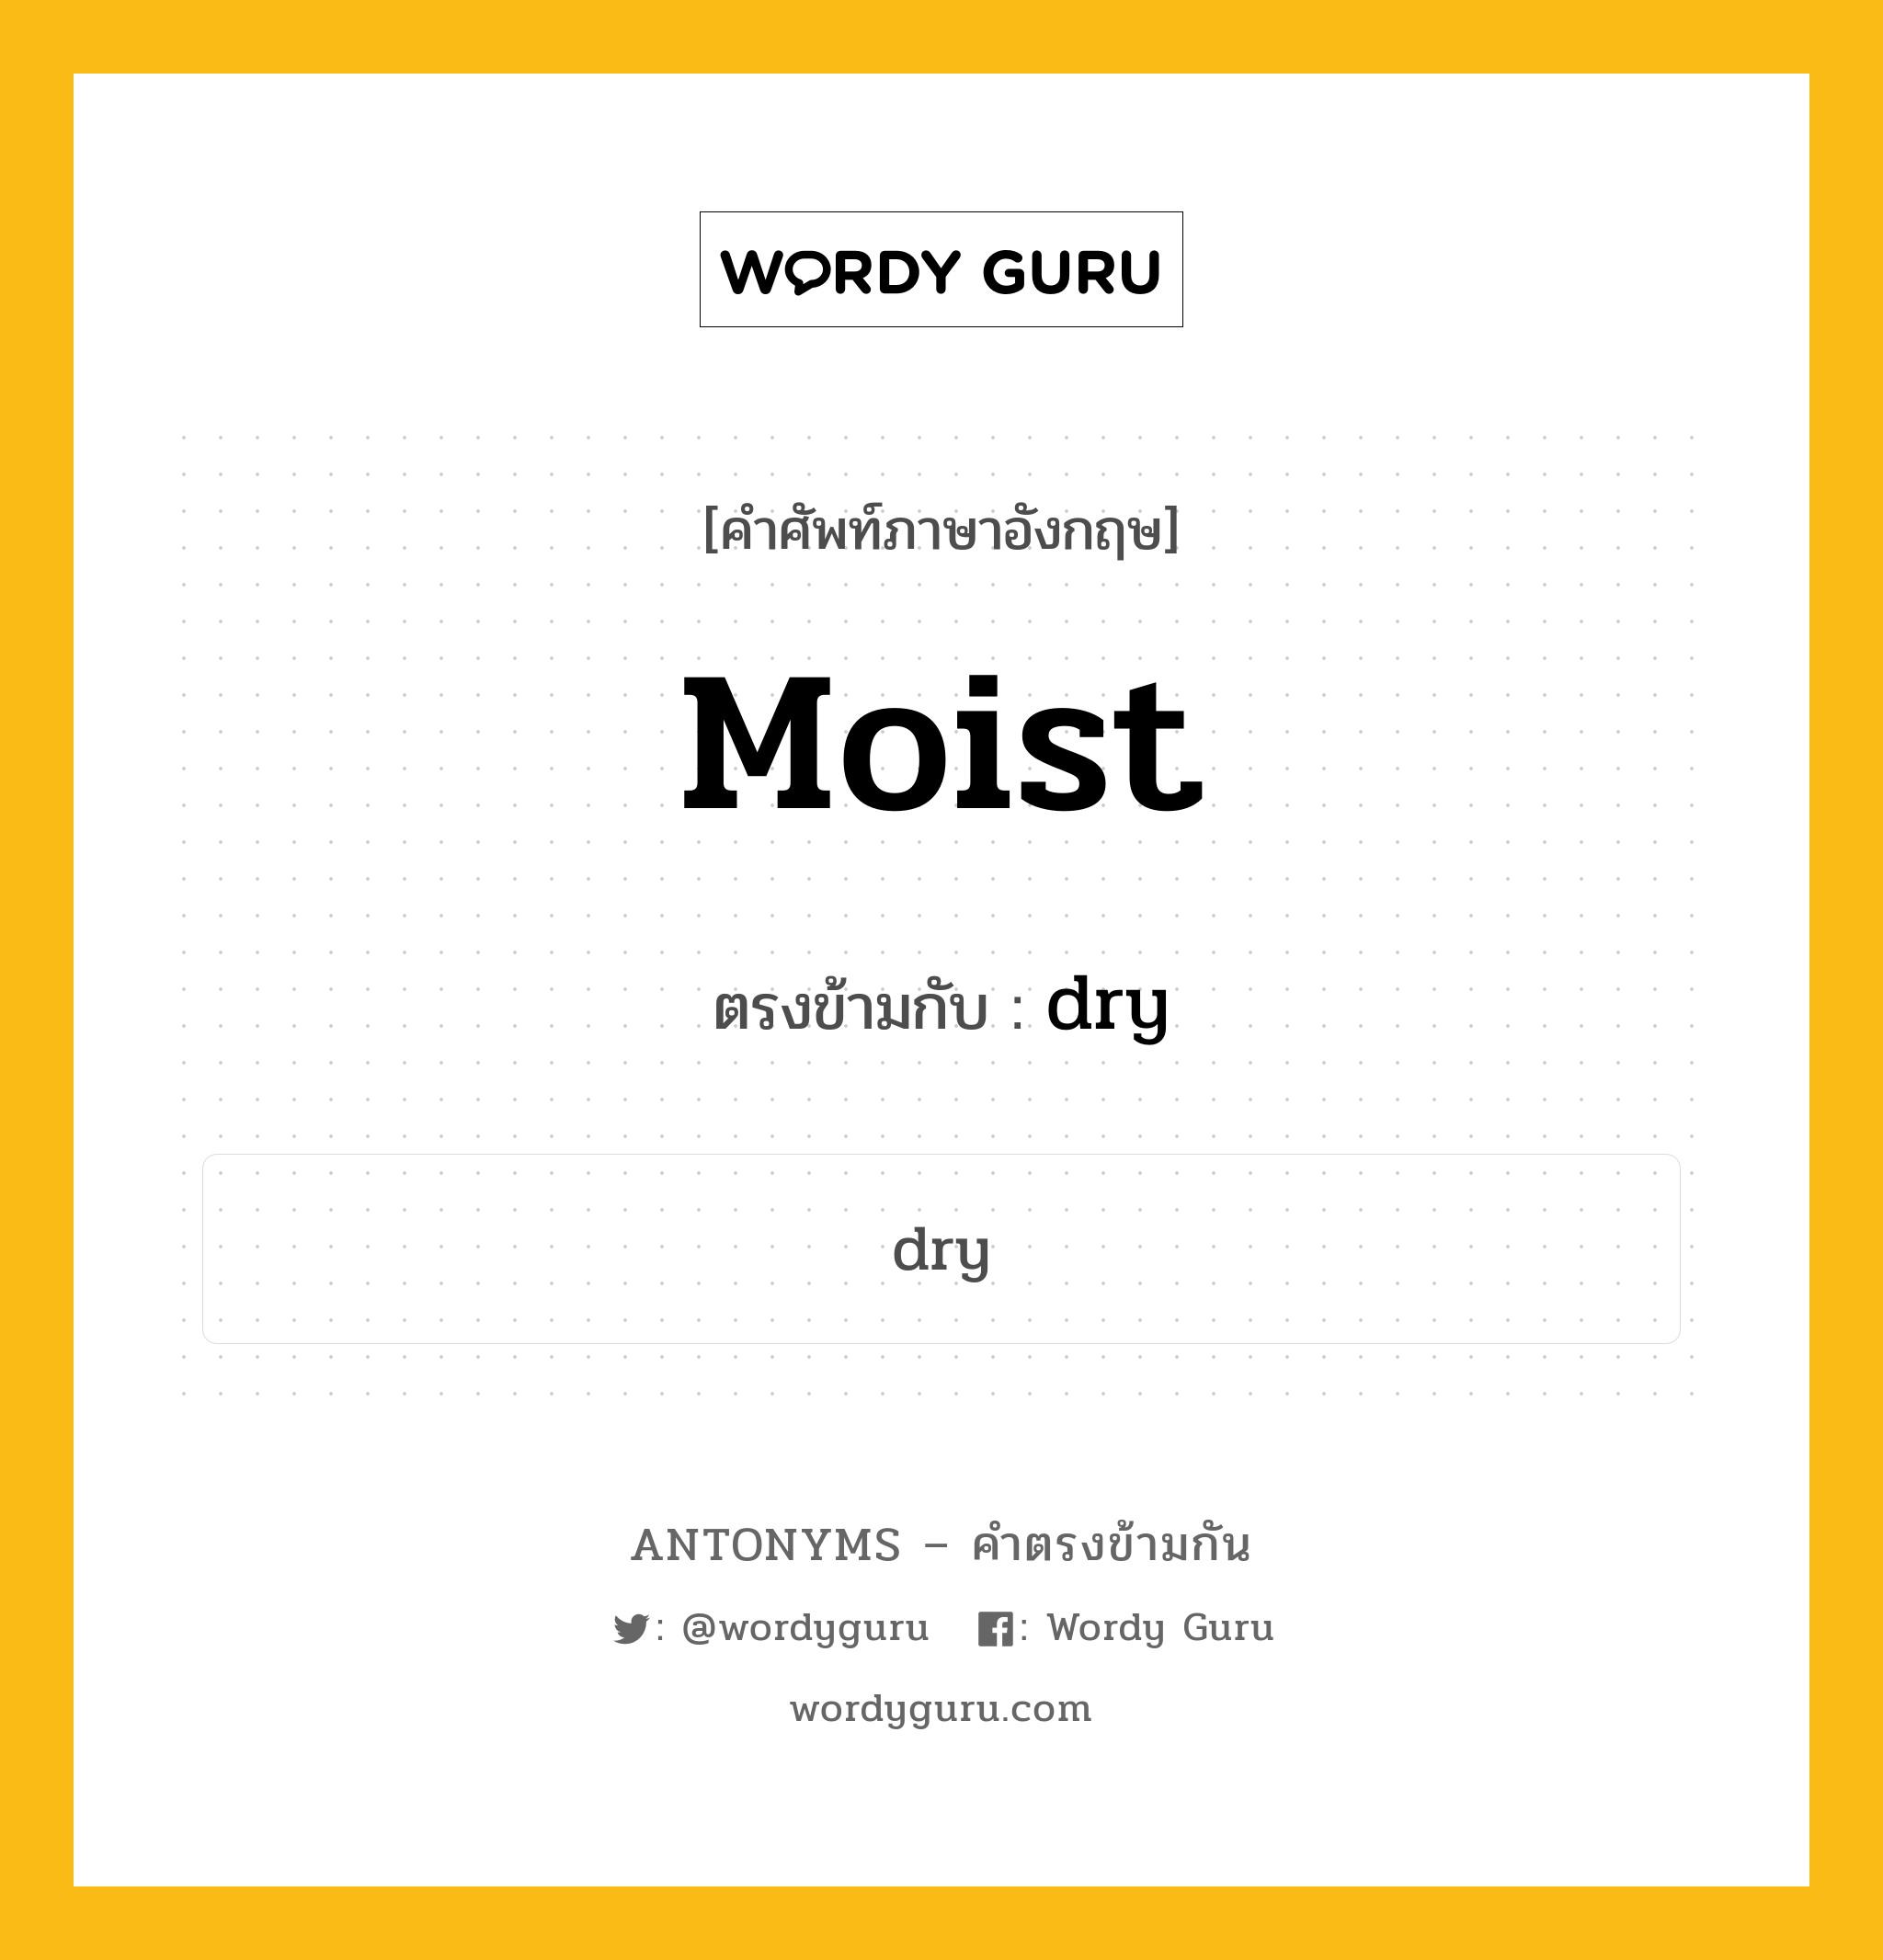 moist เป็นคำตรงข้ามกับคำไหนบ้าง?, คำศัพท์ภาษาอังกฤษ moist ตรงข้ามกับ dry หมวด dry